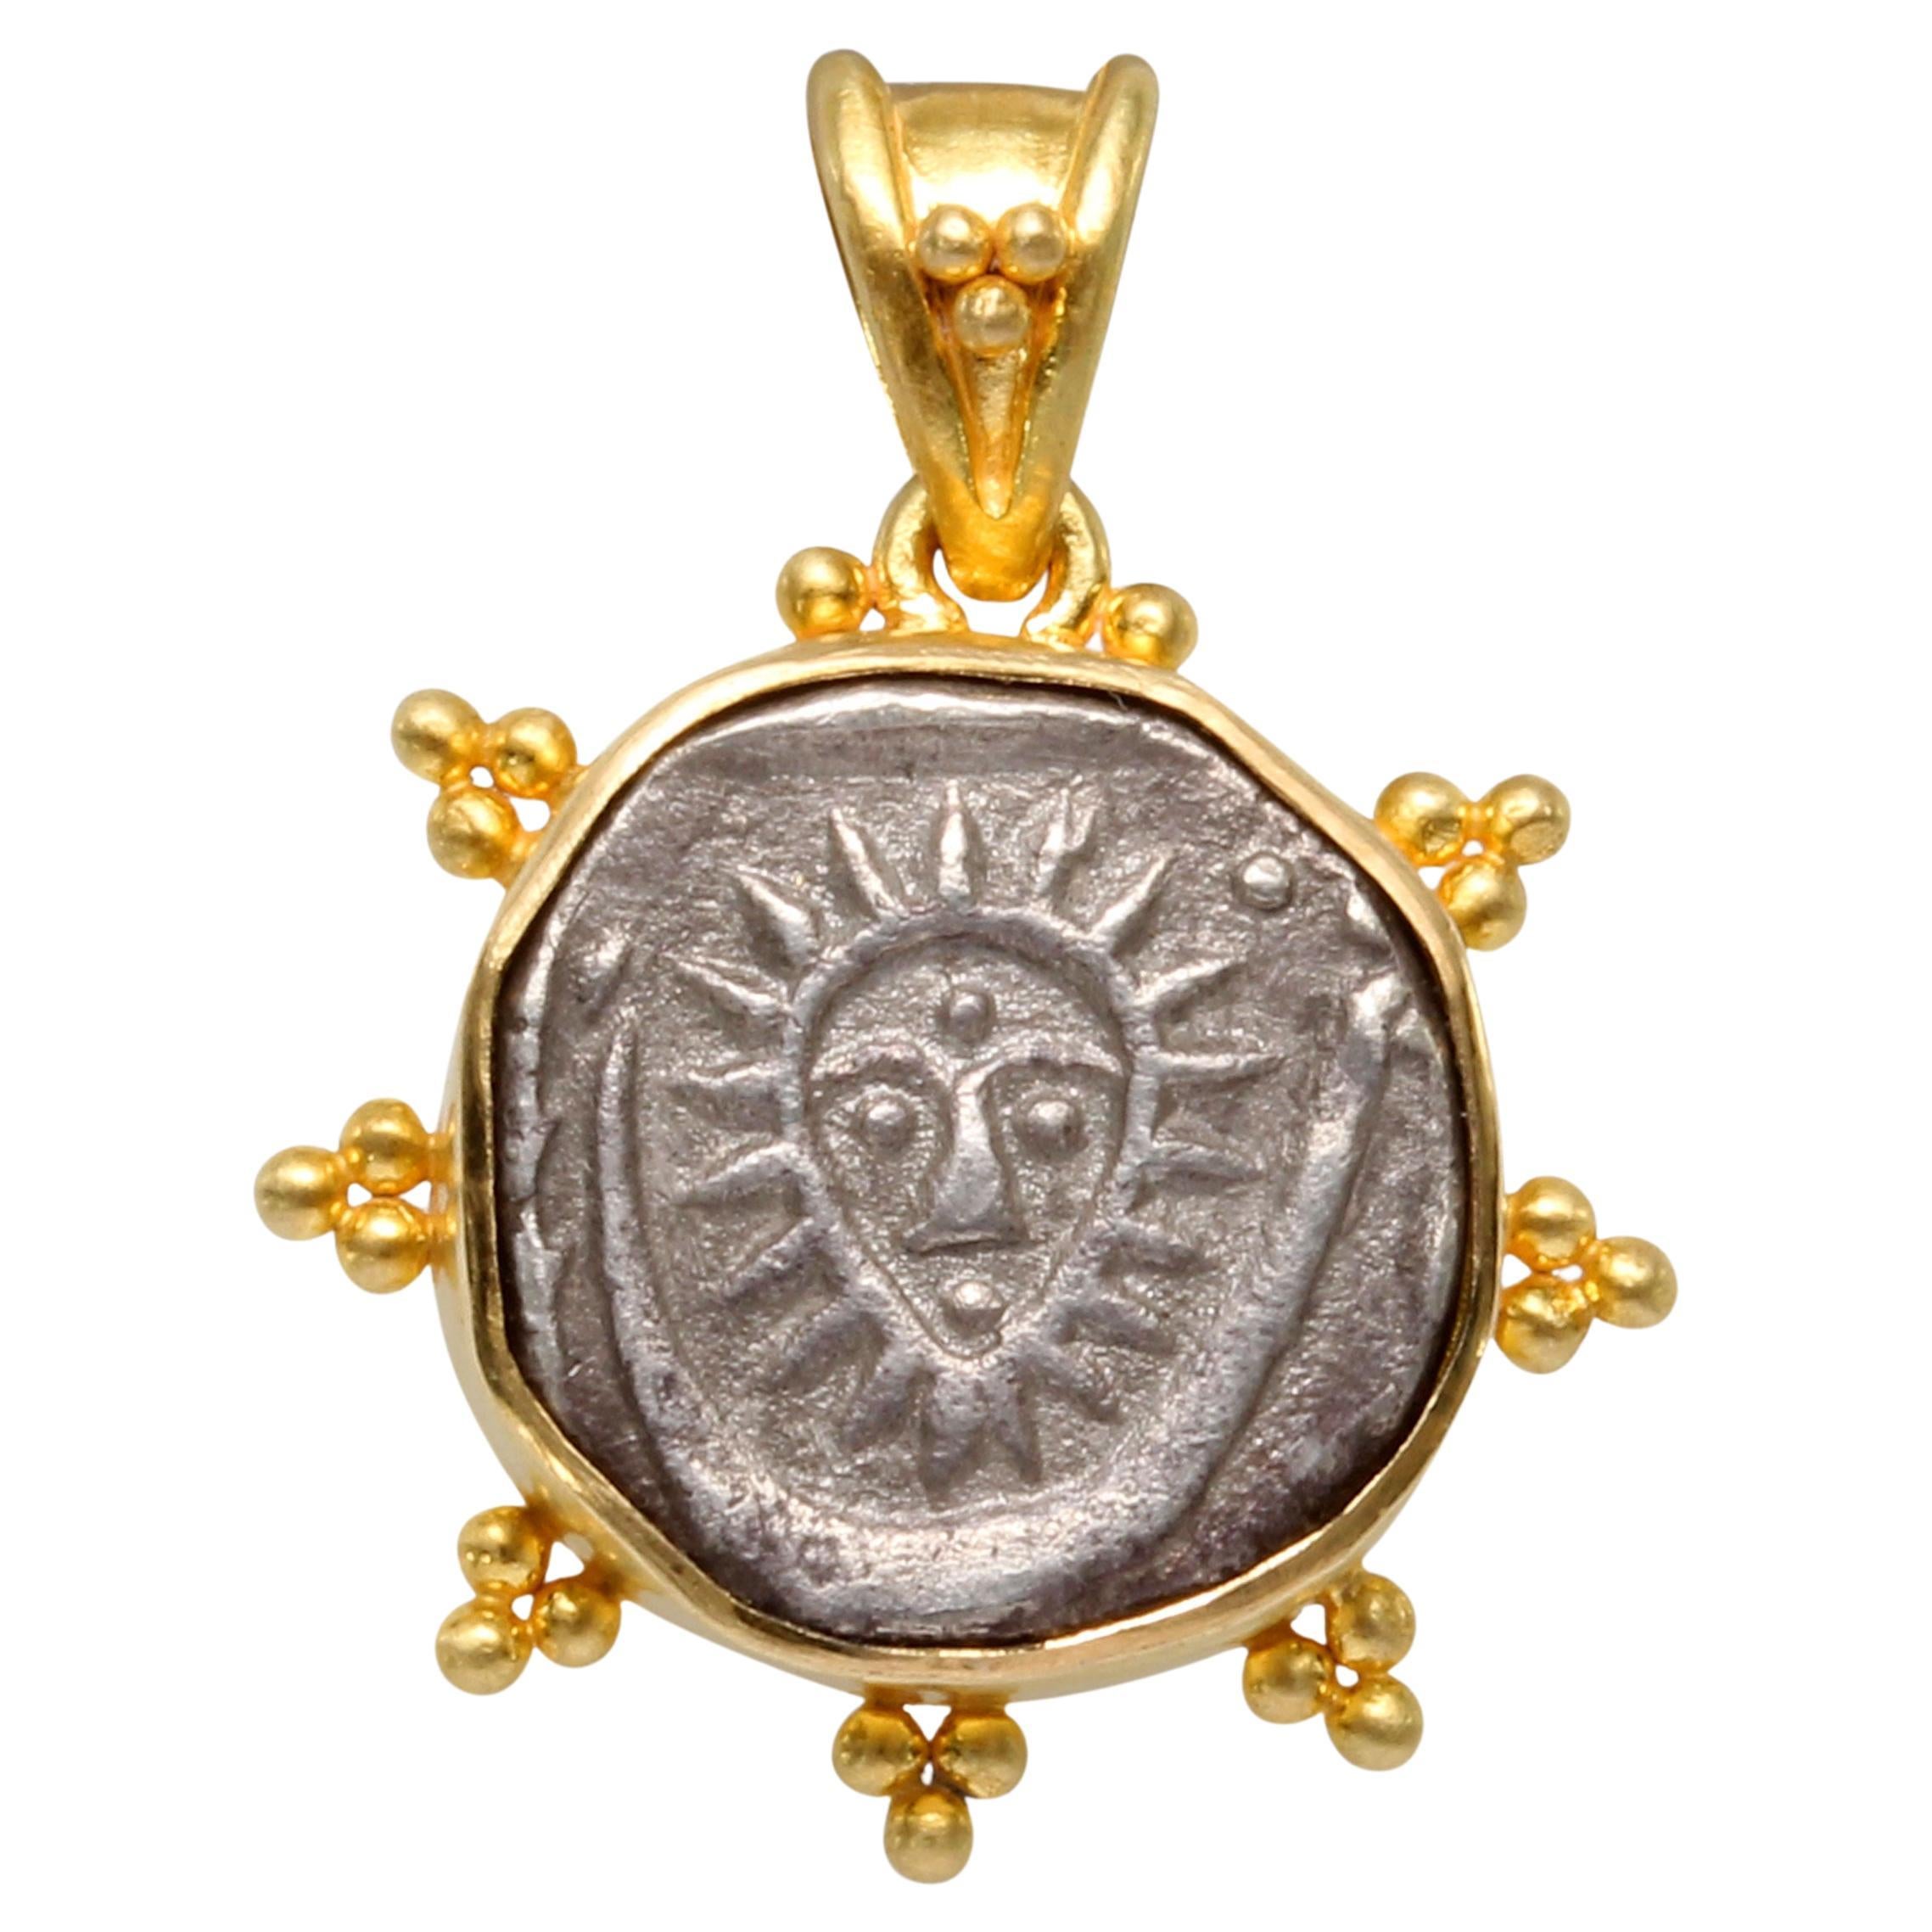 Pendentif en or 18K représentant une pièce de monnaie à face solaire de l'Inde des années 1850 